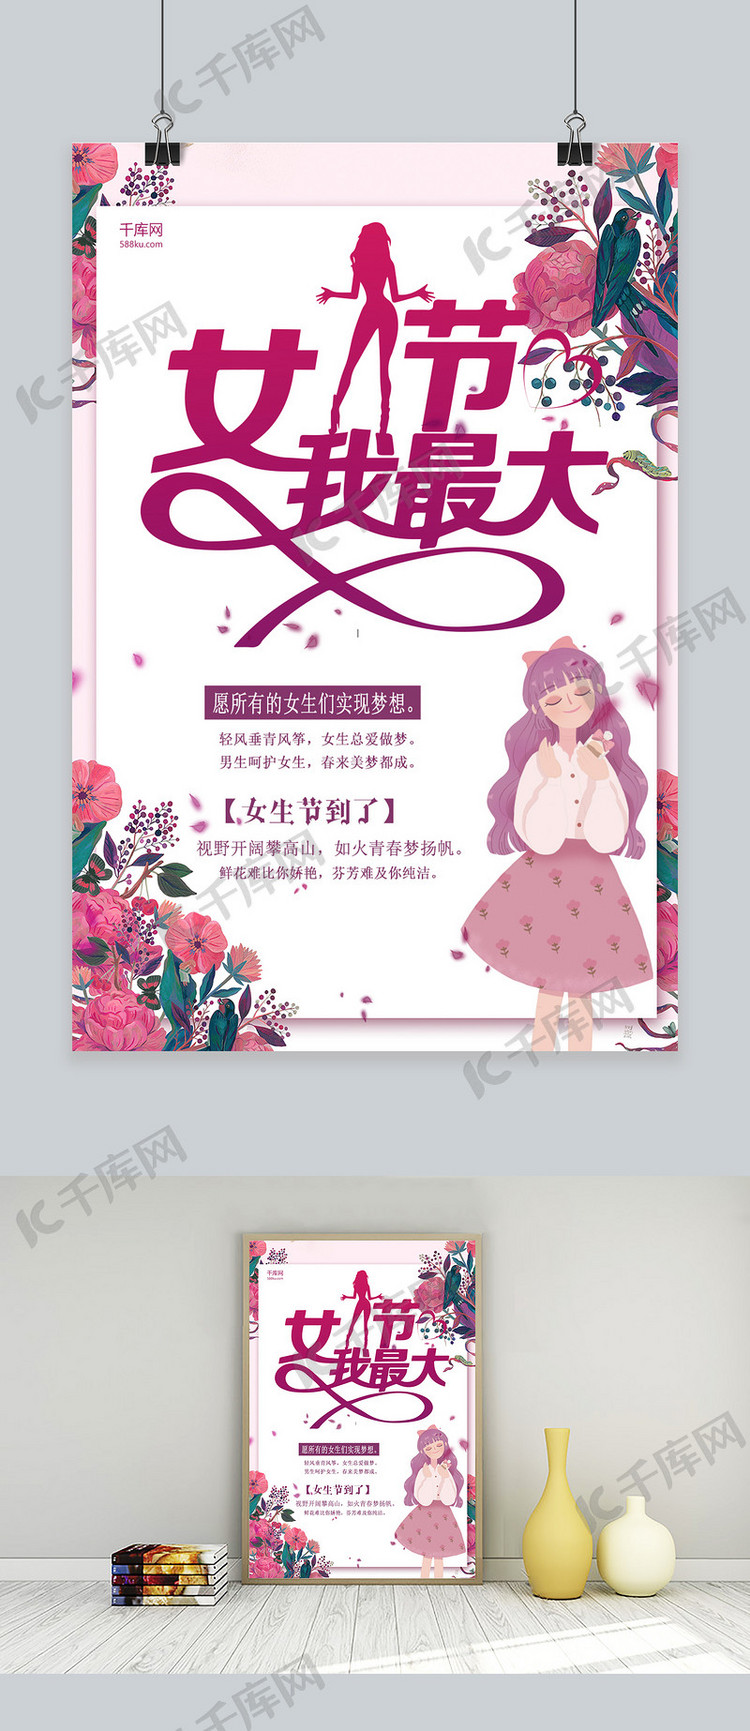 女生节紫色插画商店宣传海报